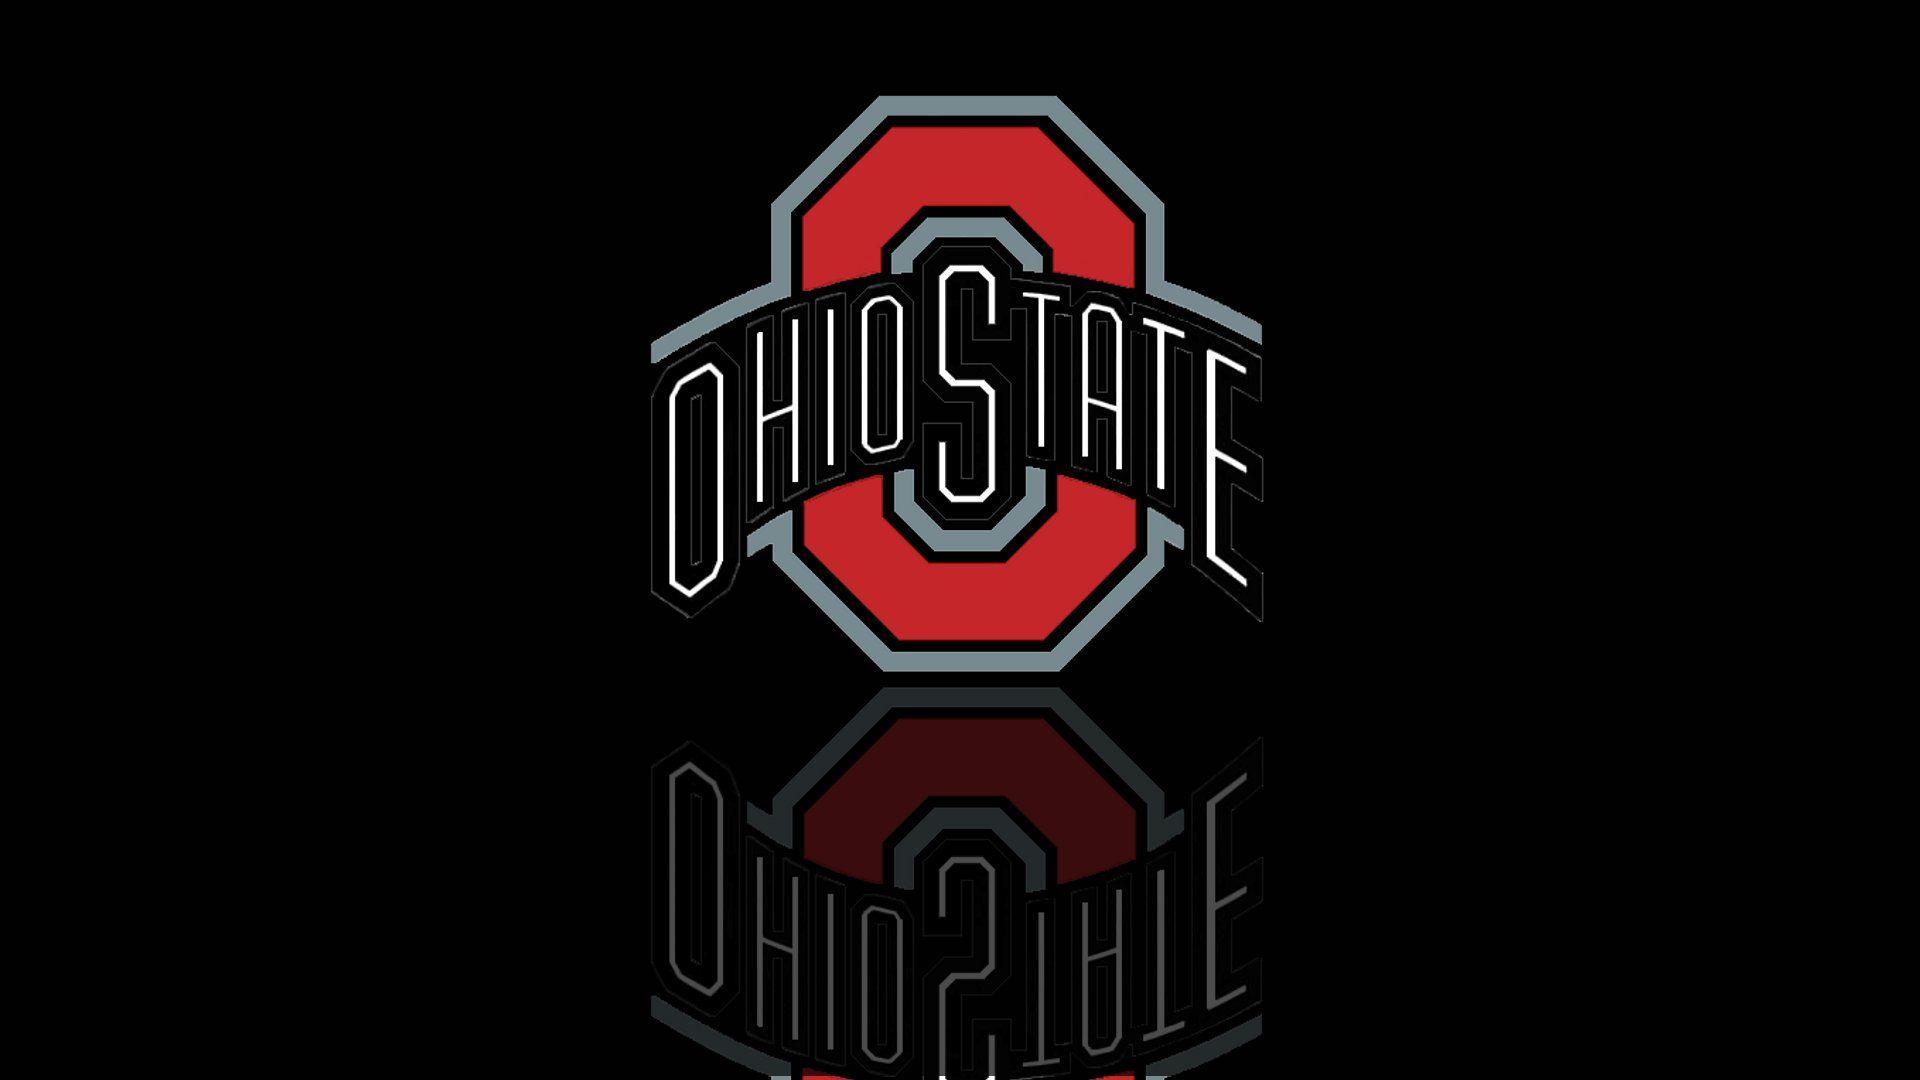 Ohio State 2